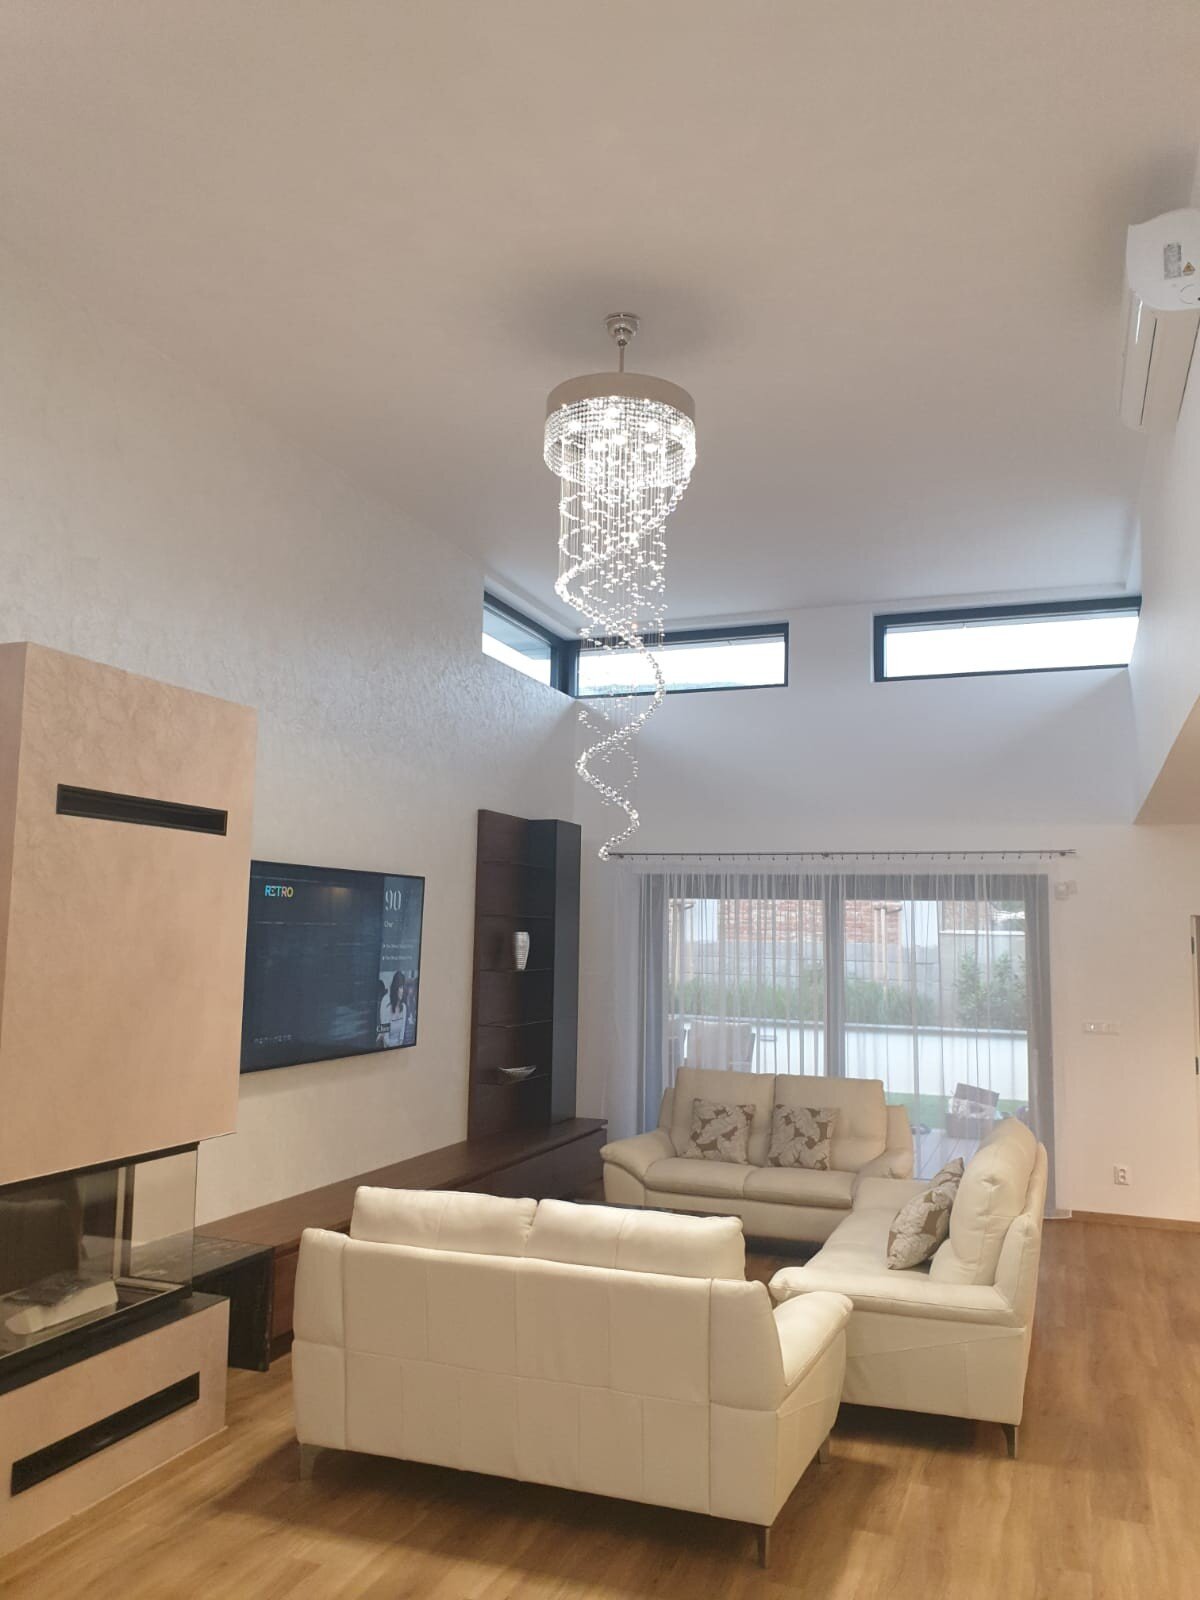 Living room in modern style design pendant light L448CE